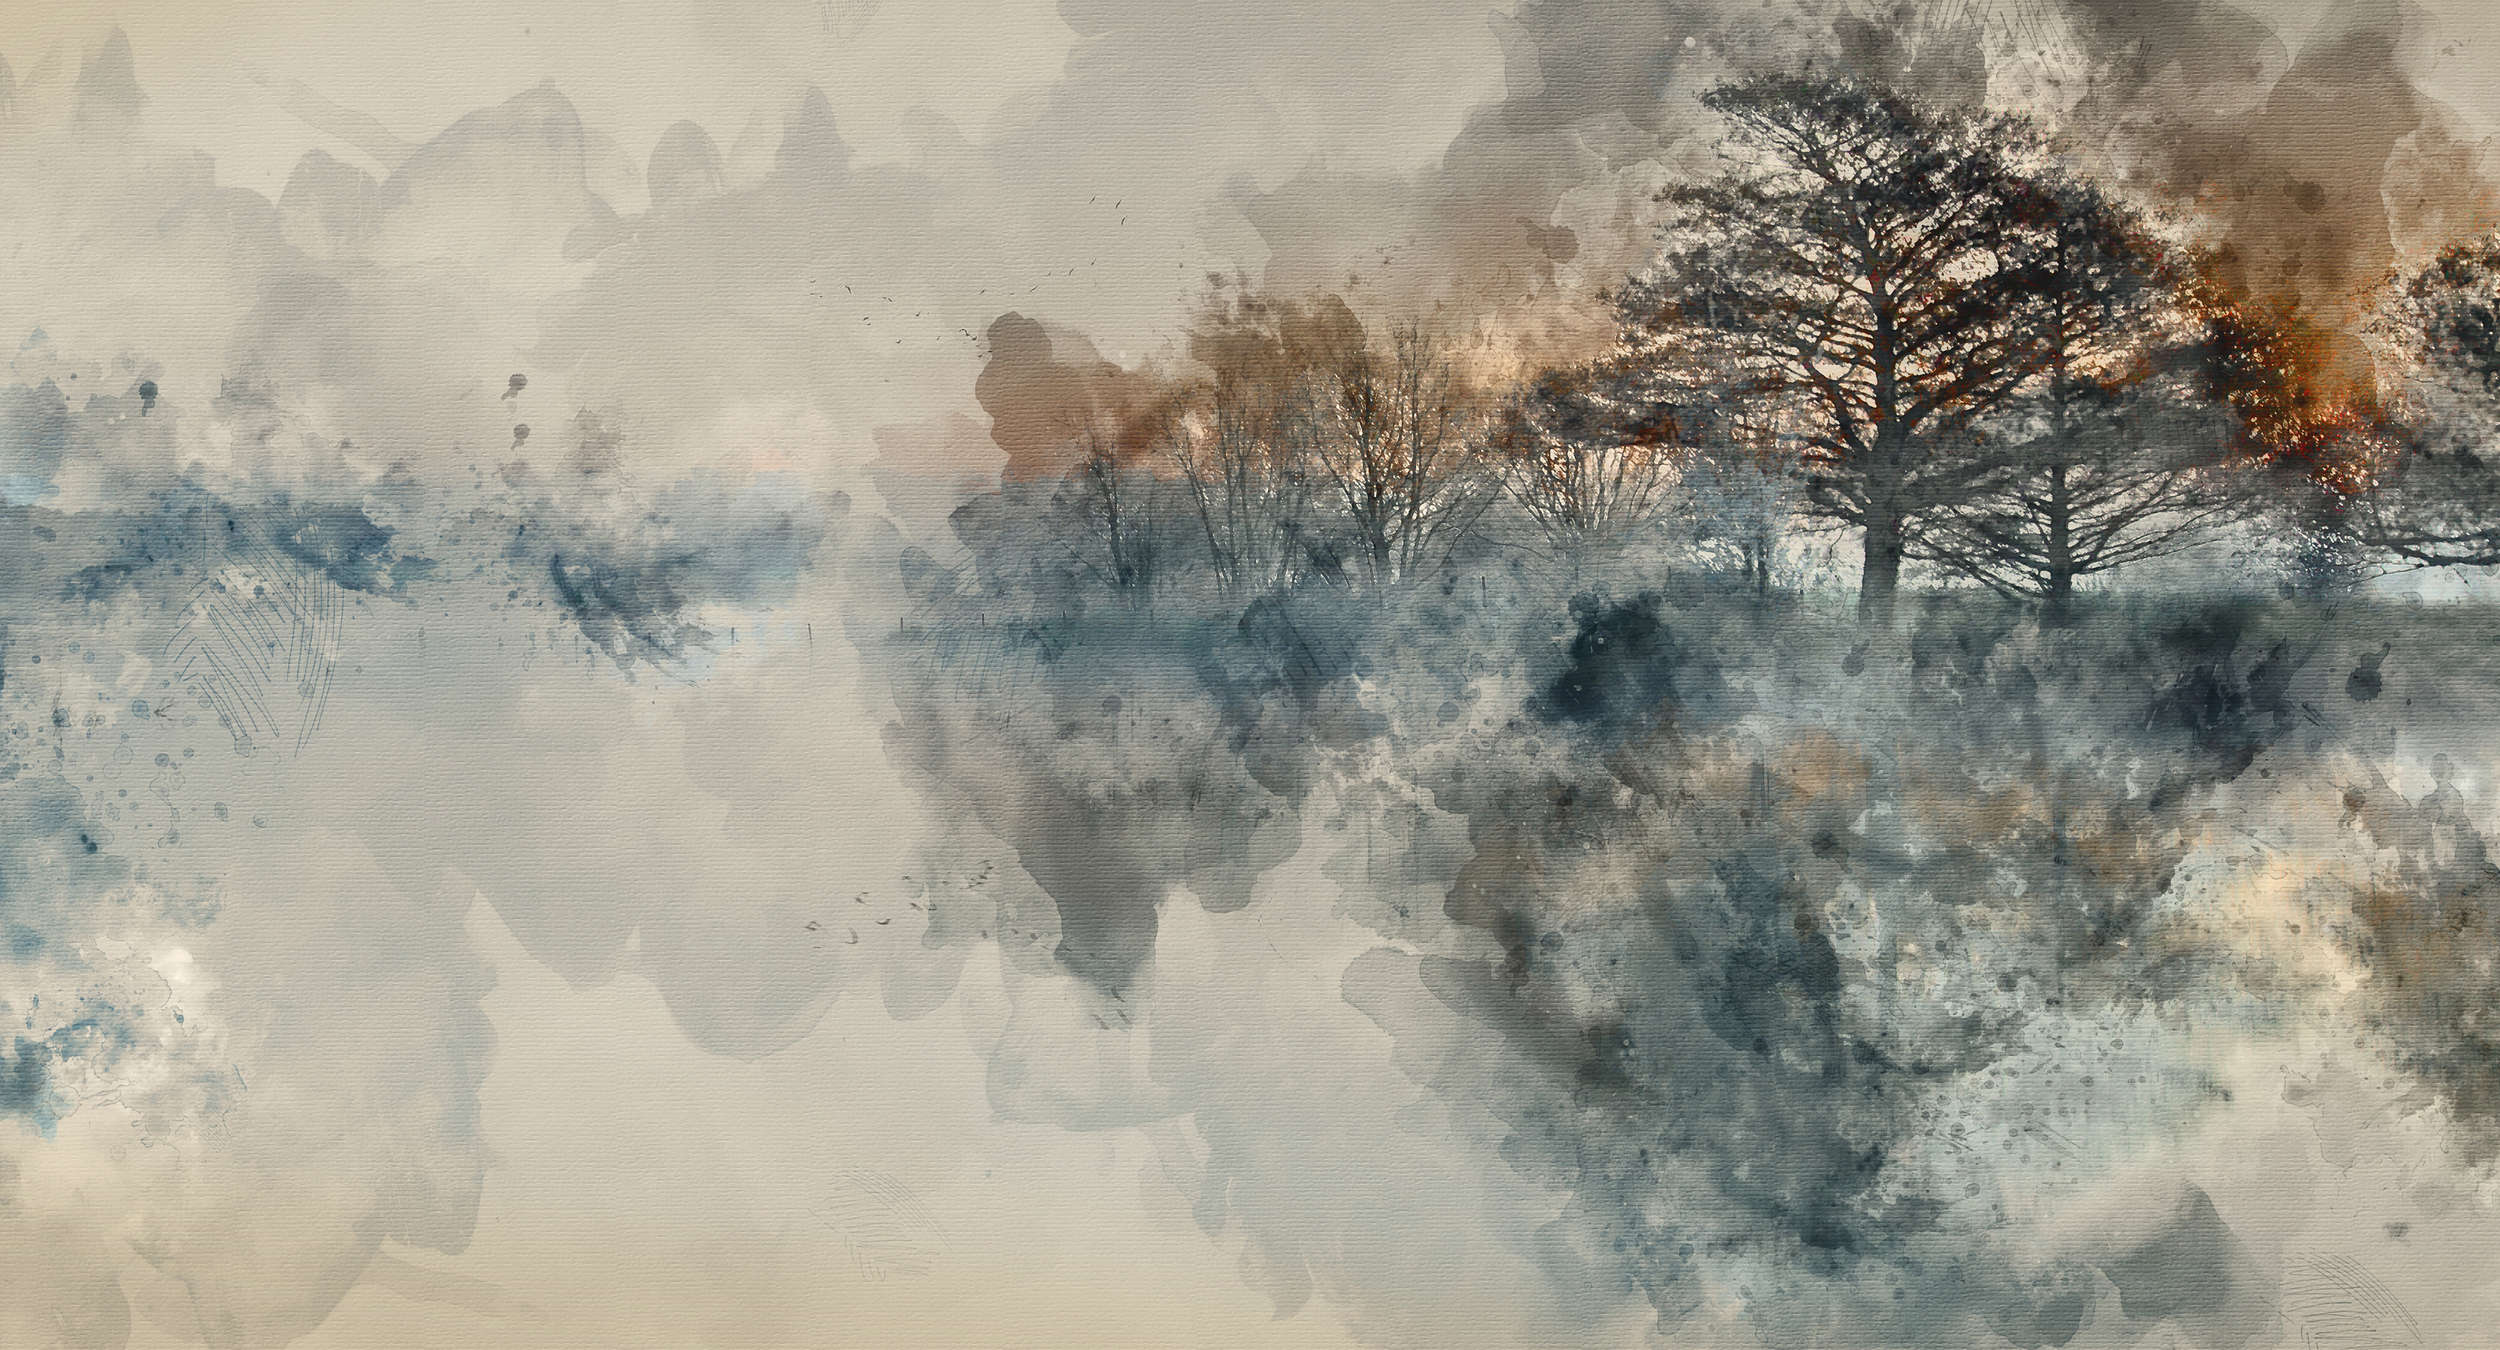             Papier peint Autumn Lake style aquarelle - bleu, beige, gris - intissé lisse nacré
        